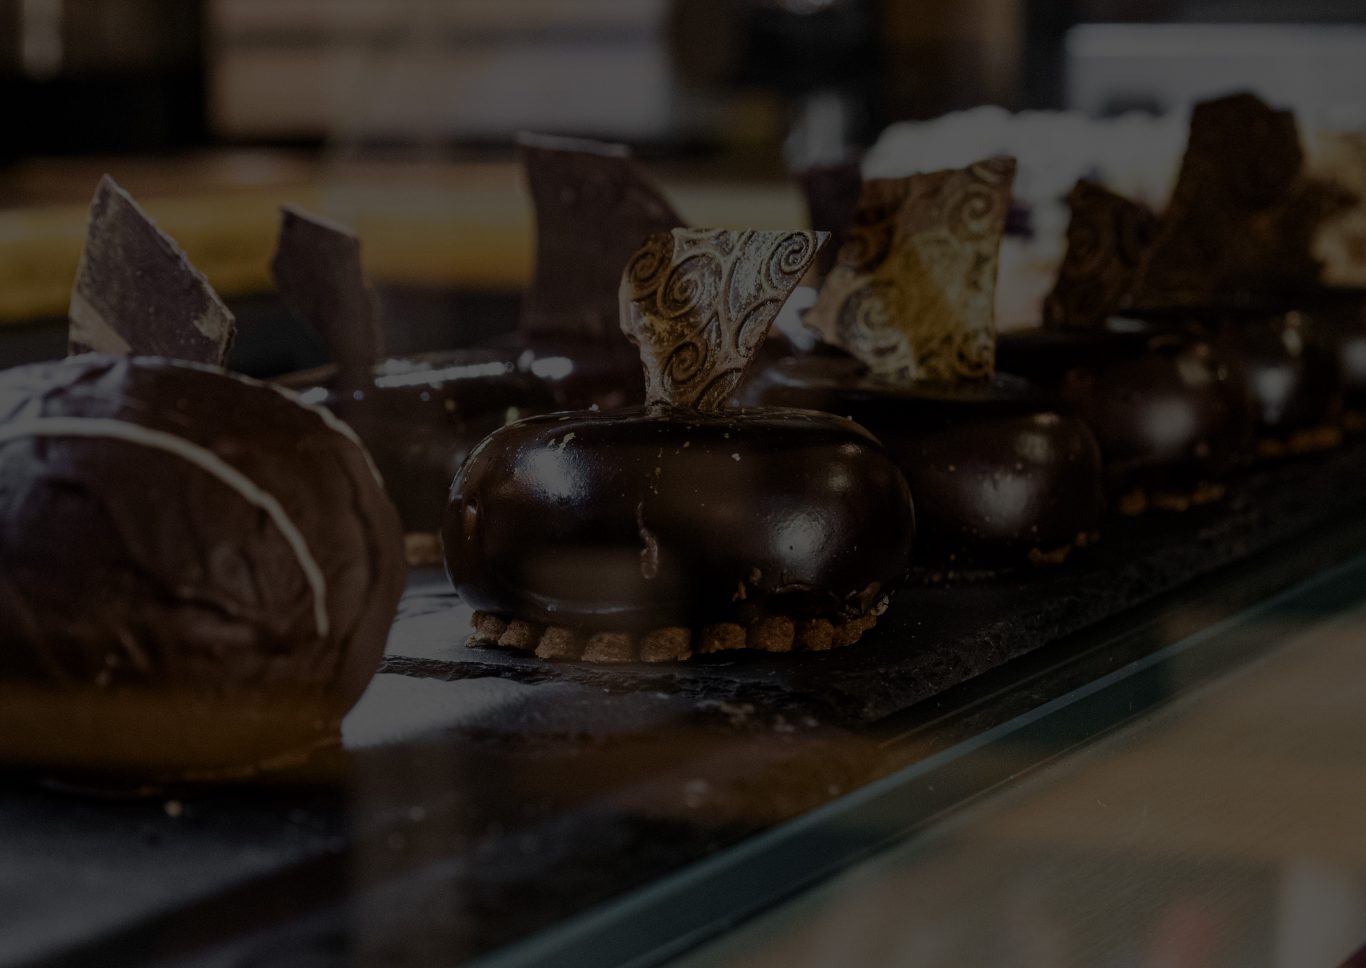 Ein paar Schokoladentörtchen mit goldenen Schokoplättchen als Dekoration in einer Kuchenvirtrine